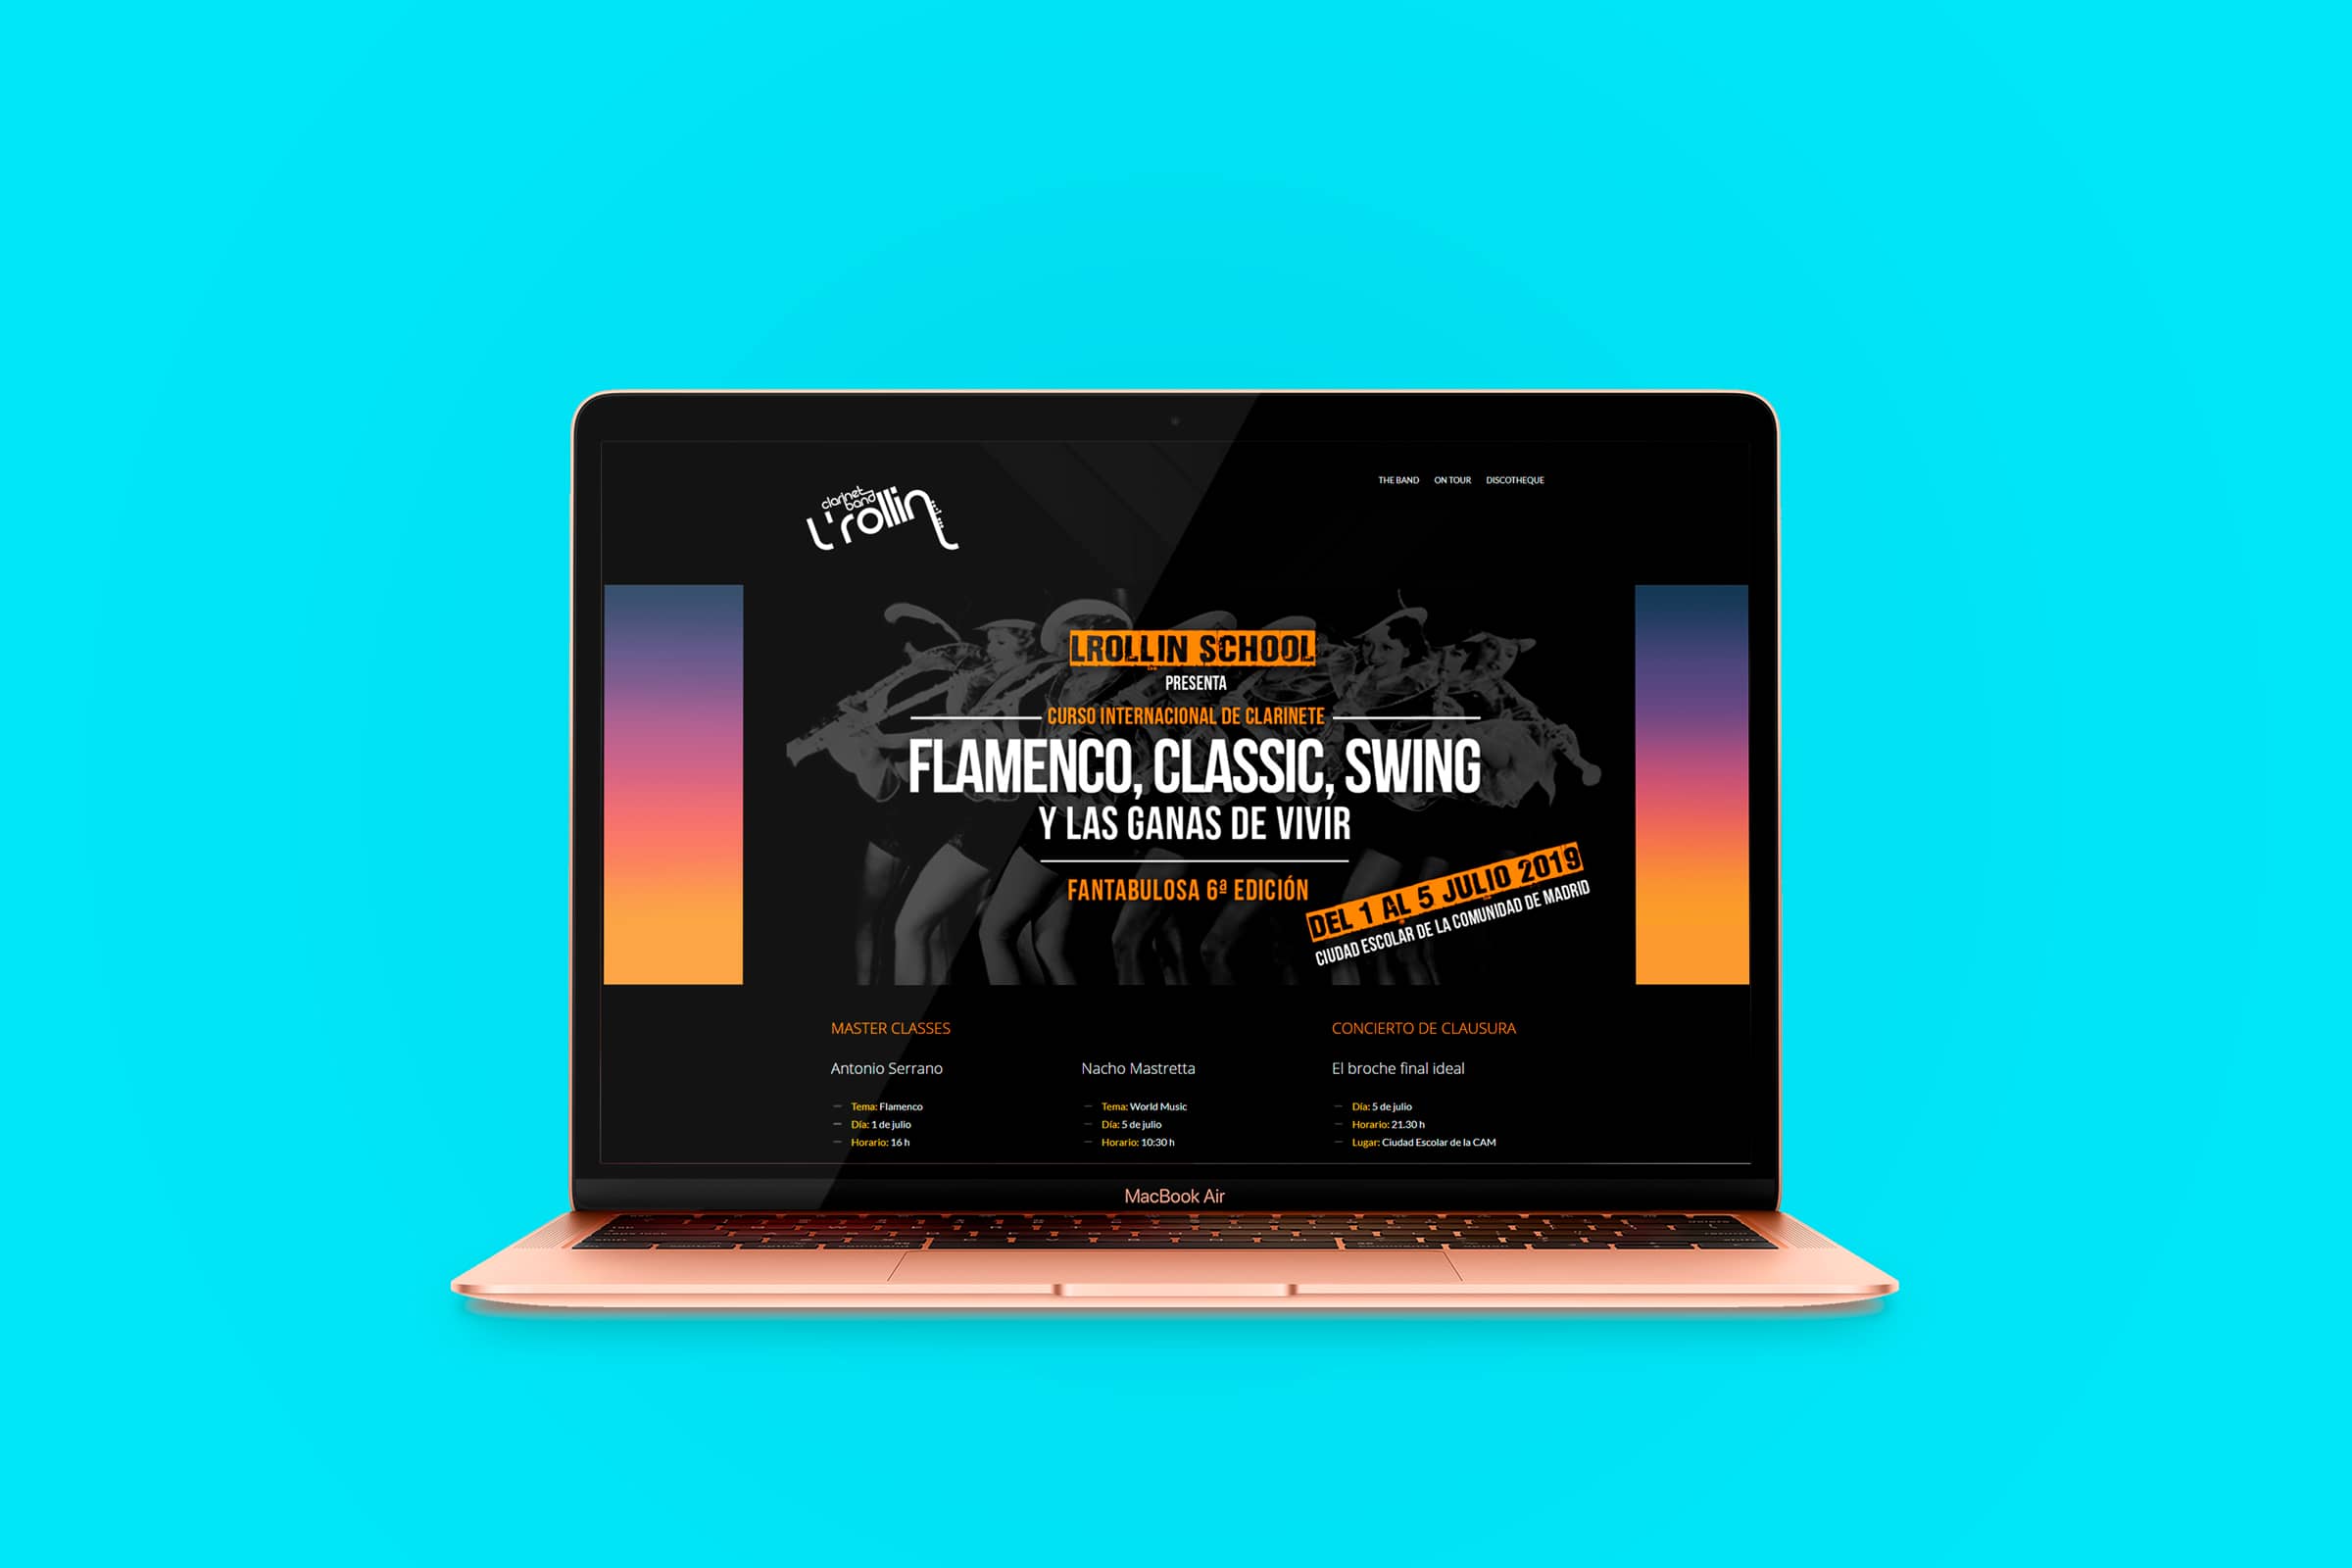 Diseño web para evento Flamenco Classic Swing y las ganas de vivir branding por The Acctitude